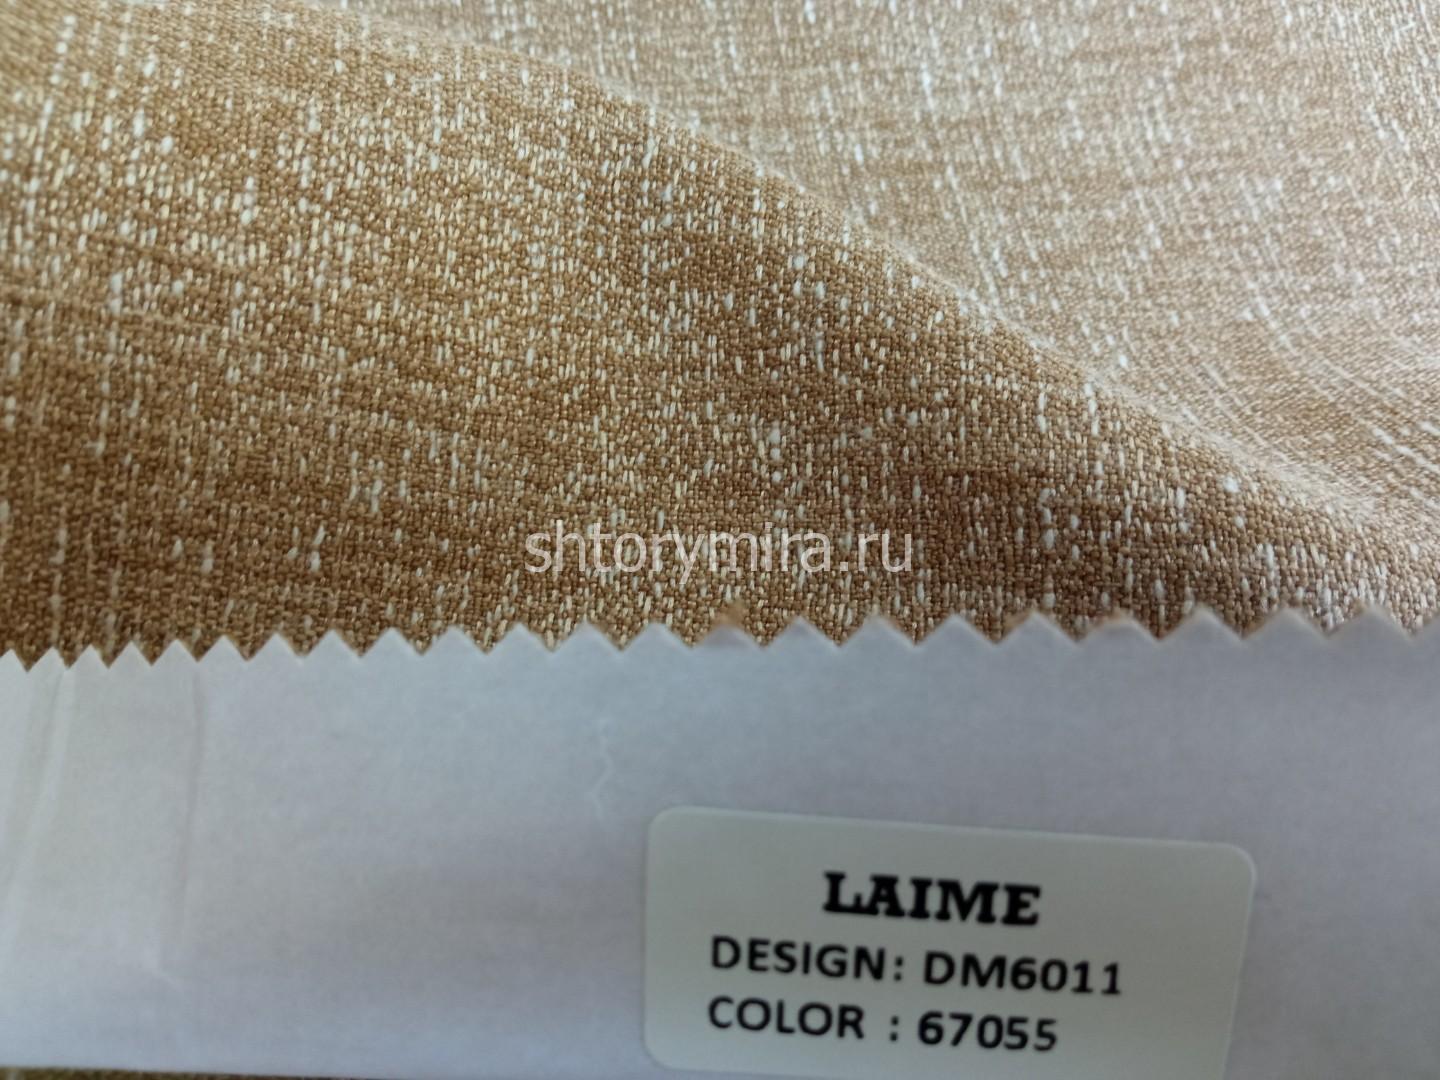 Ткань DM 6011-67055 Laime Collection